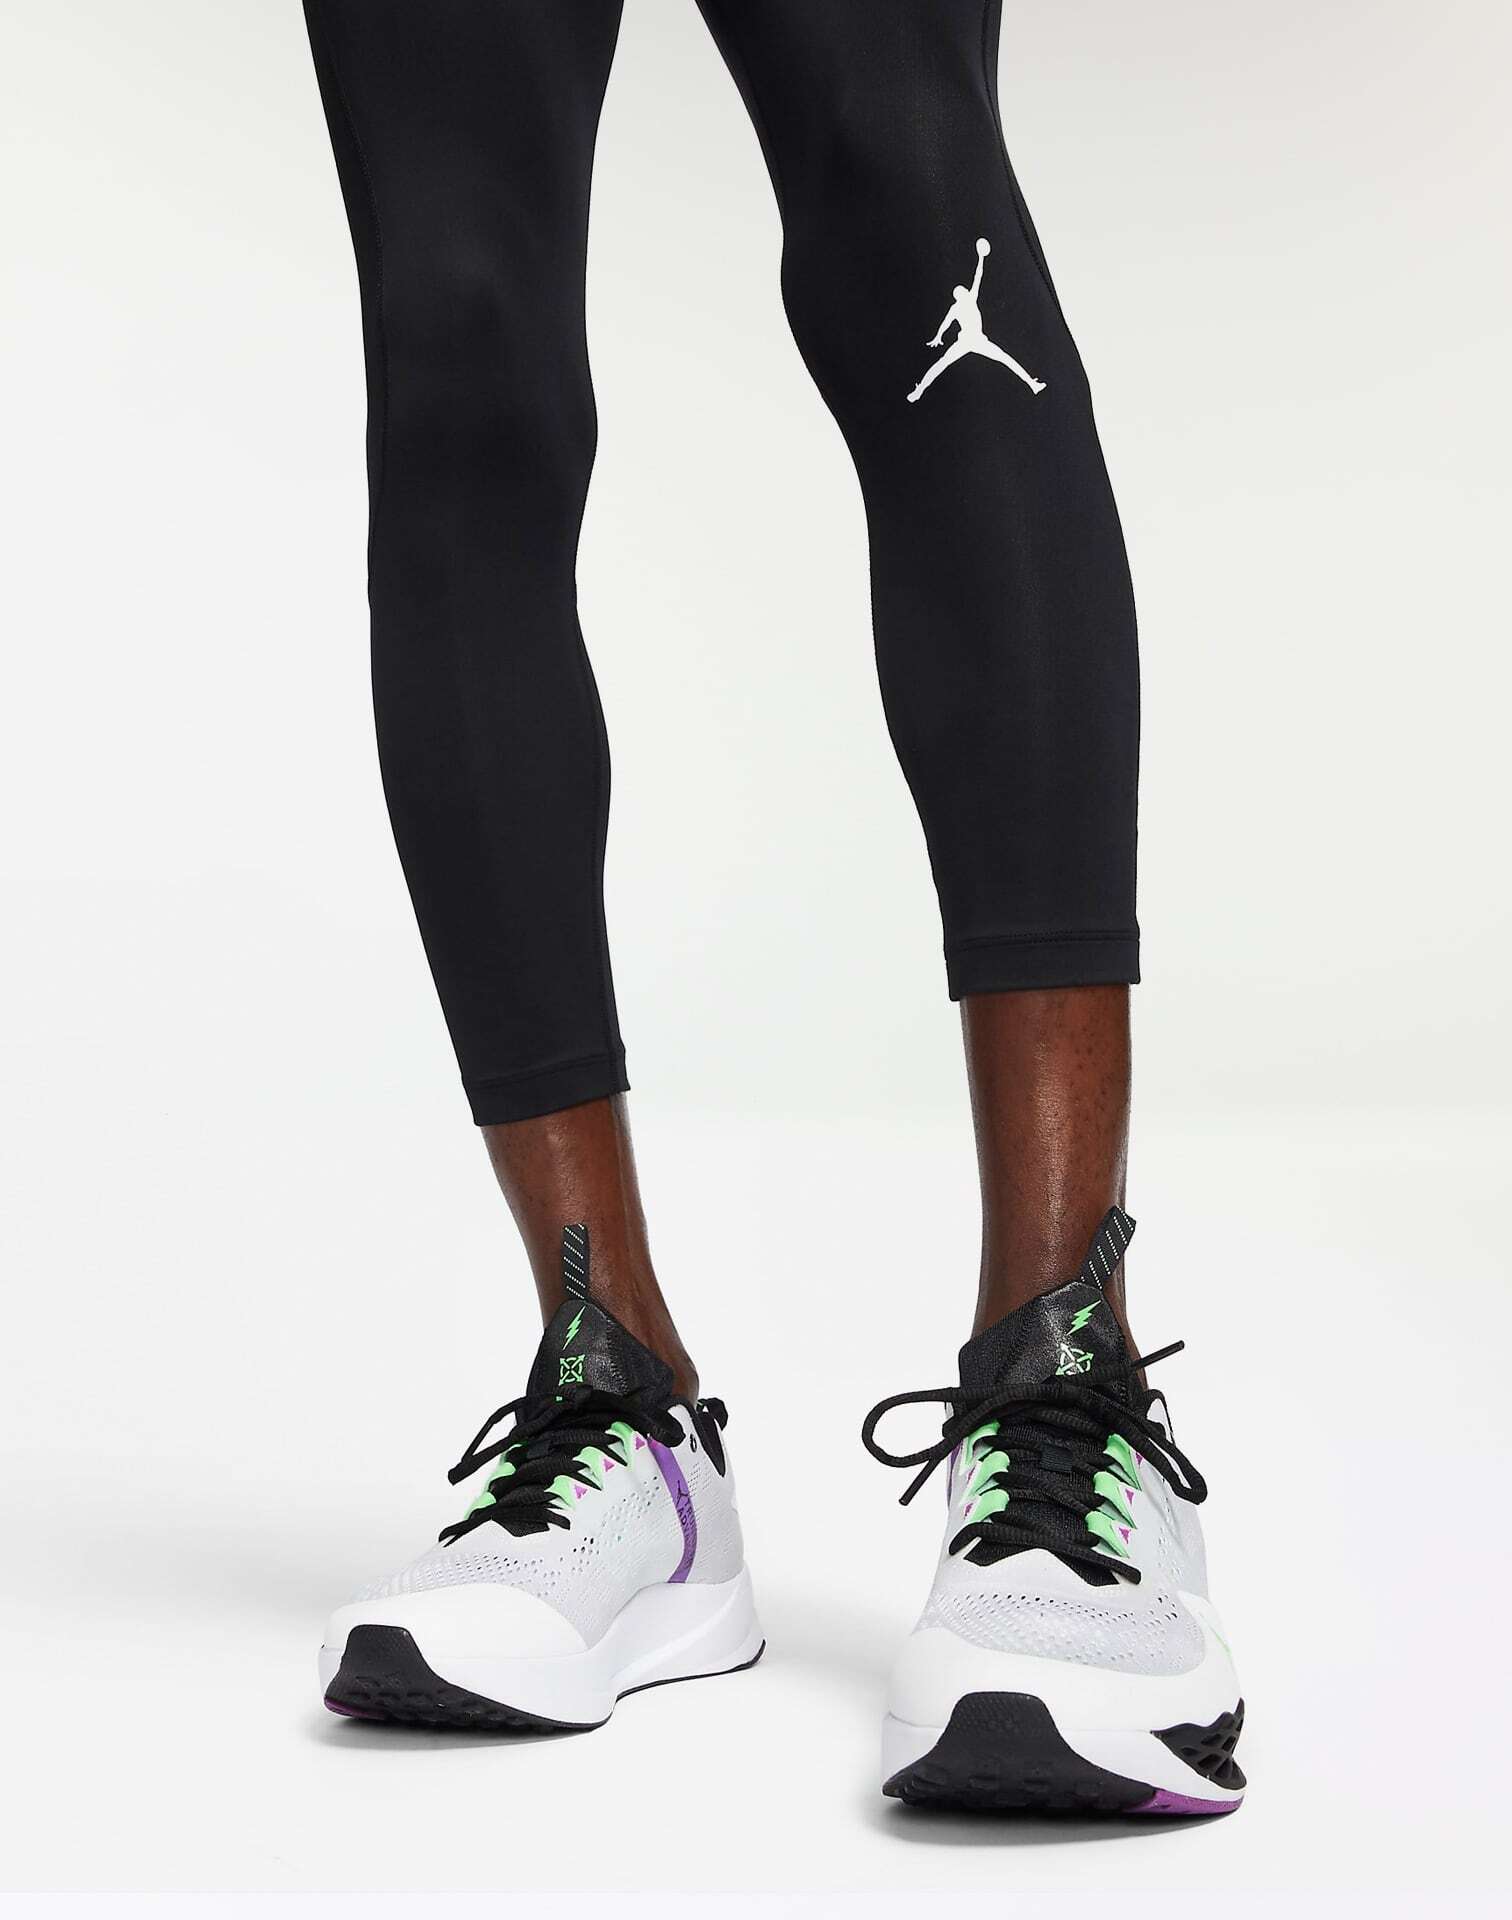 Jordan compression pants 3/4